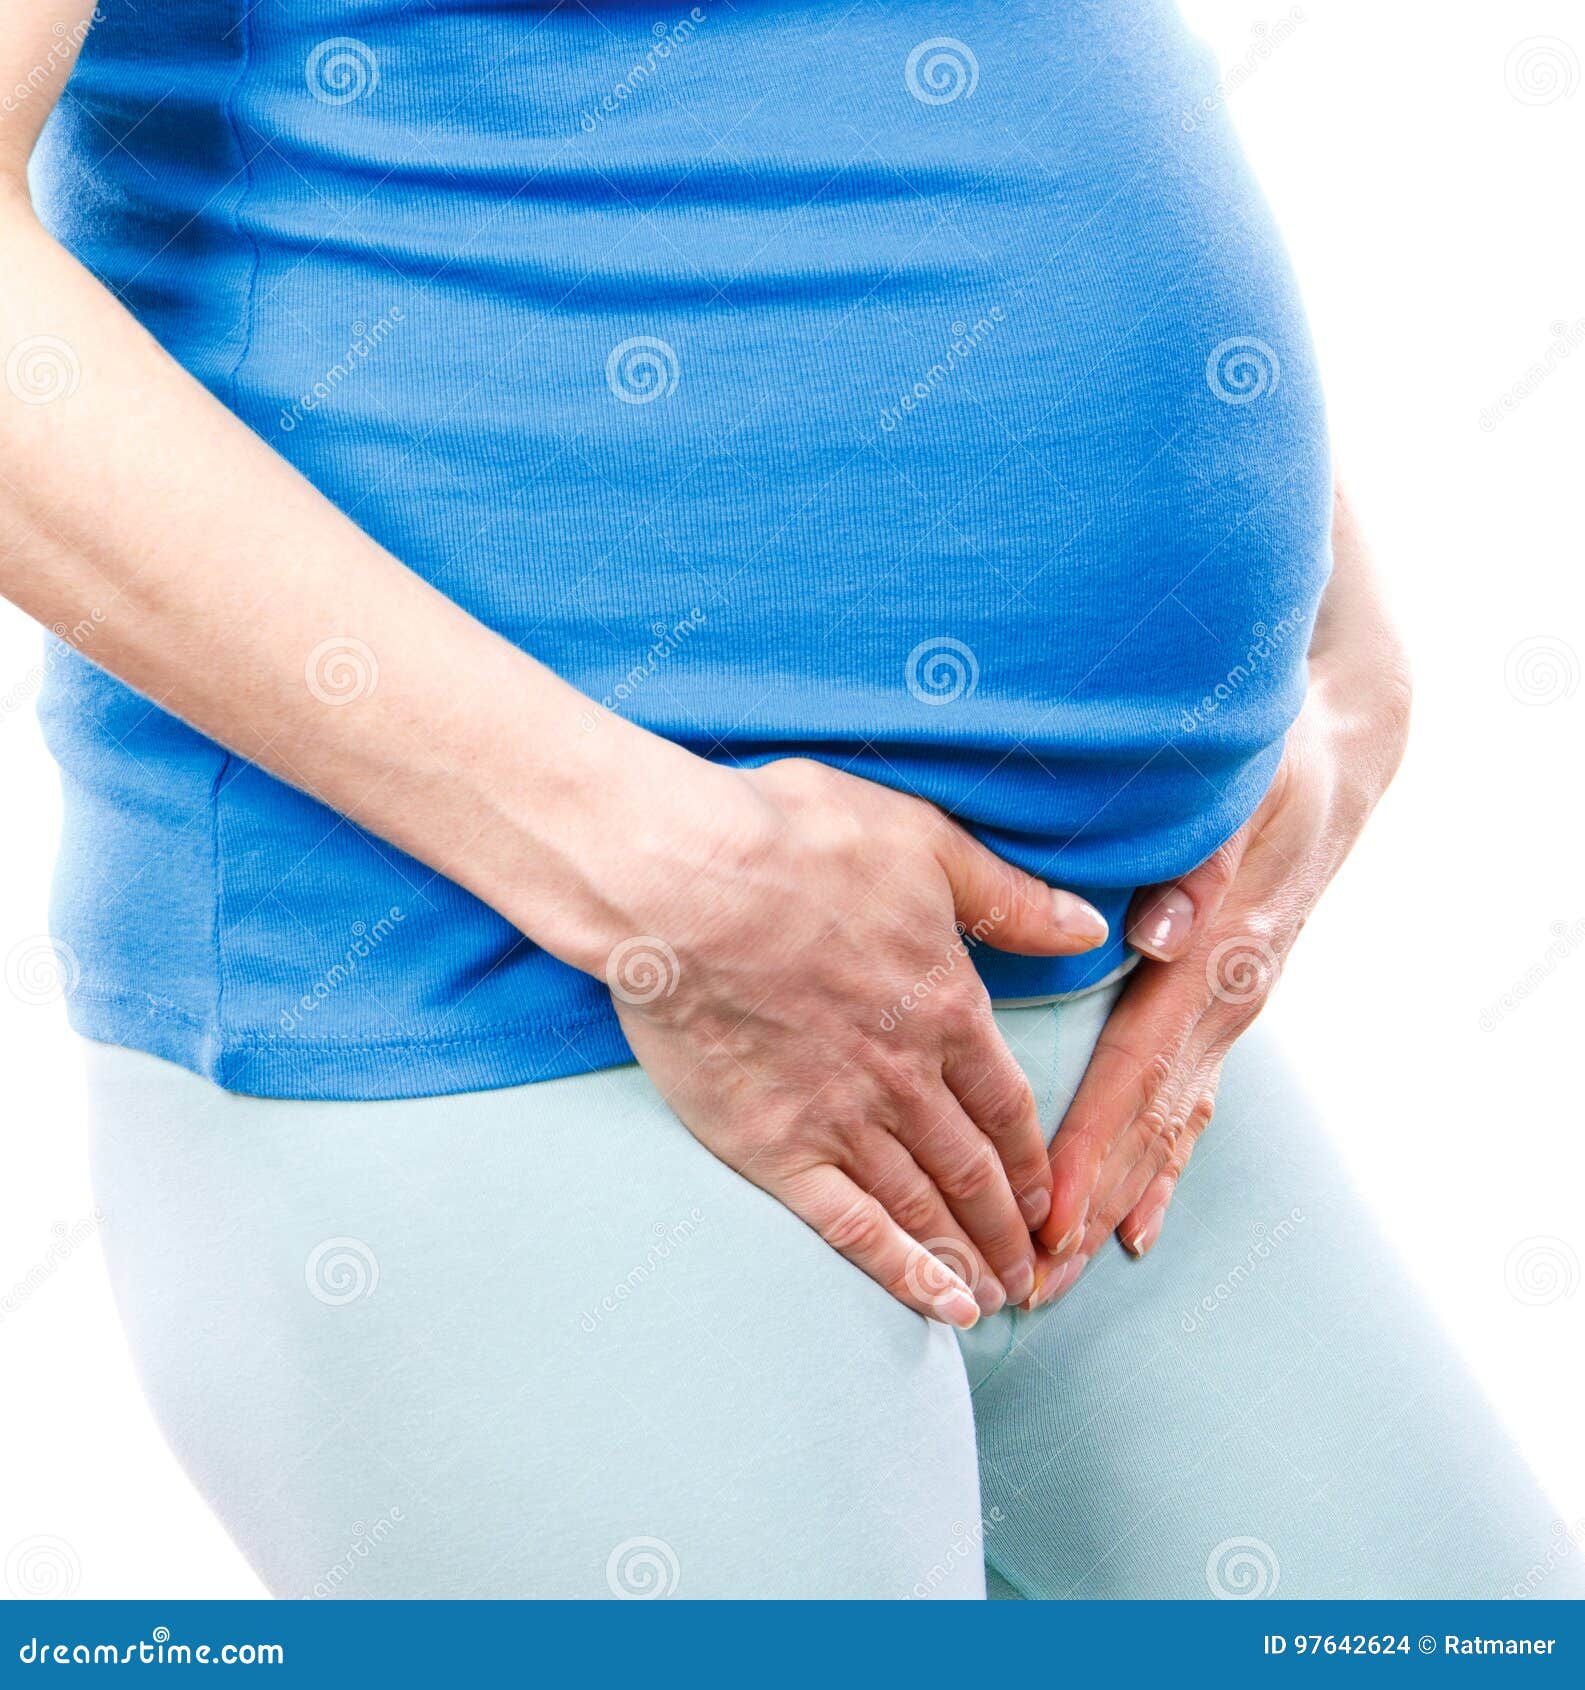 Боли в животе в паховой области. Беременные боли в животе. Цистит у беременных. Боли в животе у женщин. Профилактика цистита у беременных.